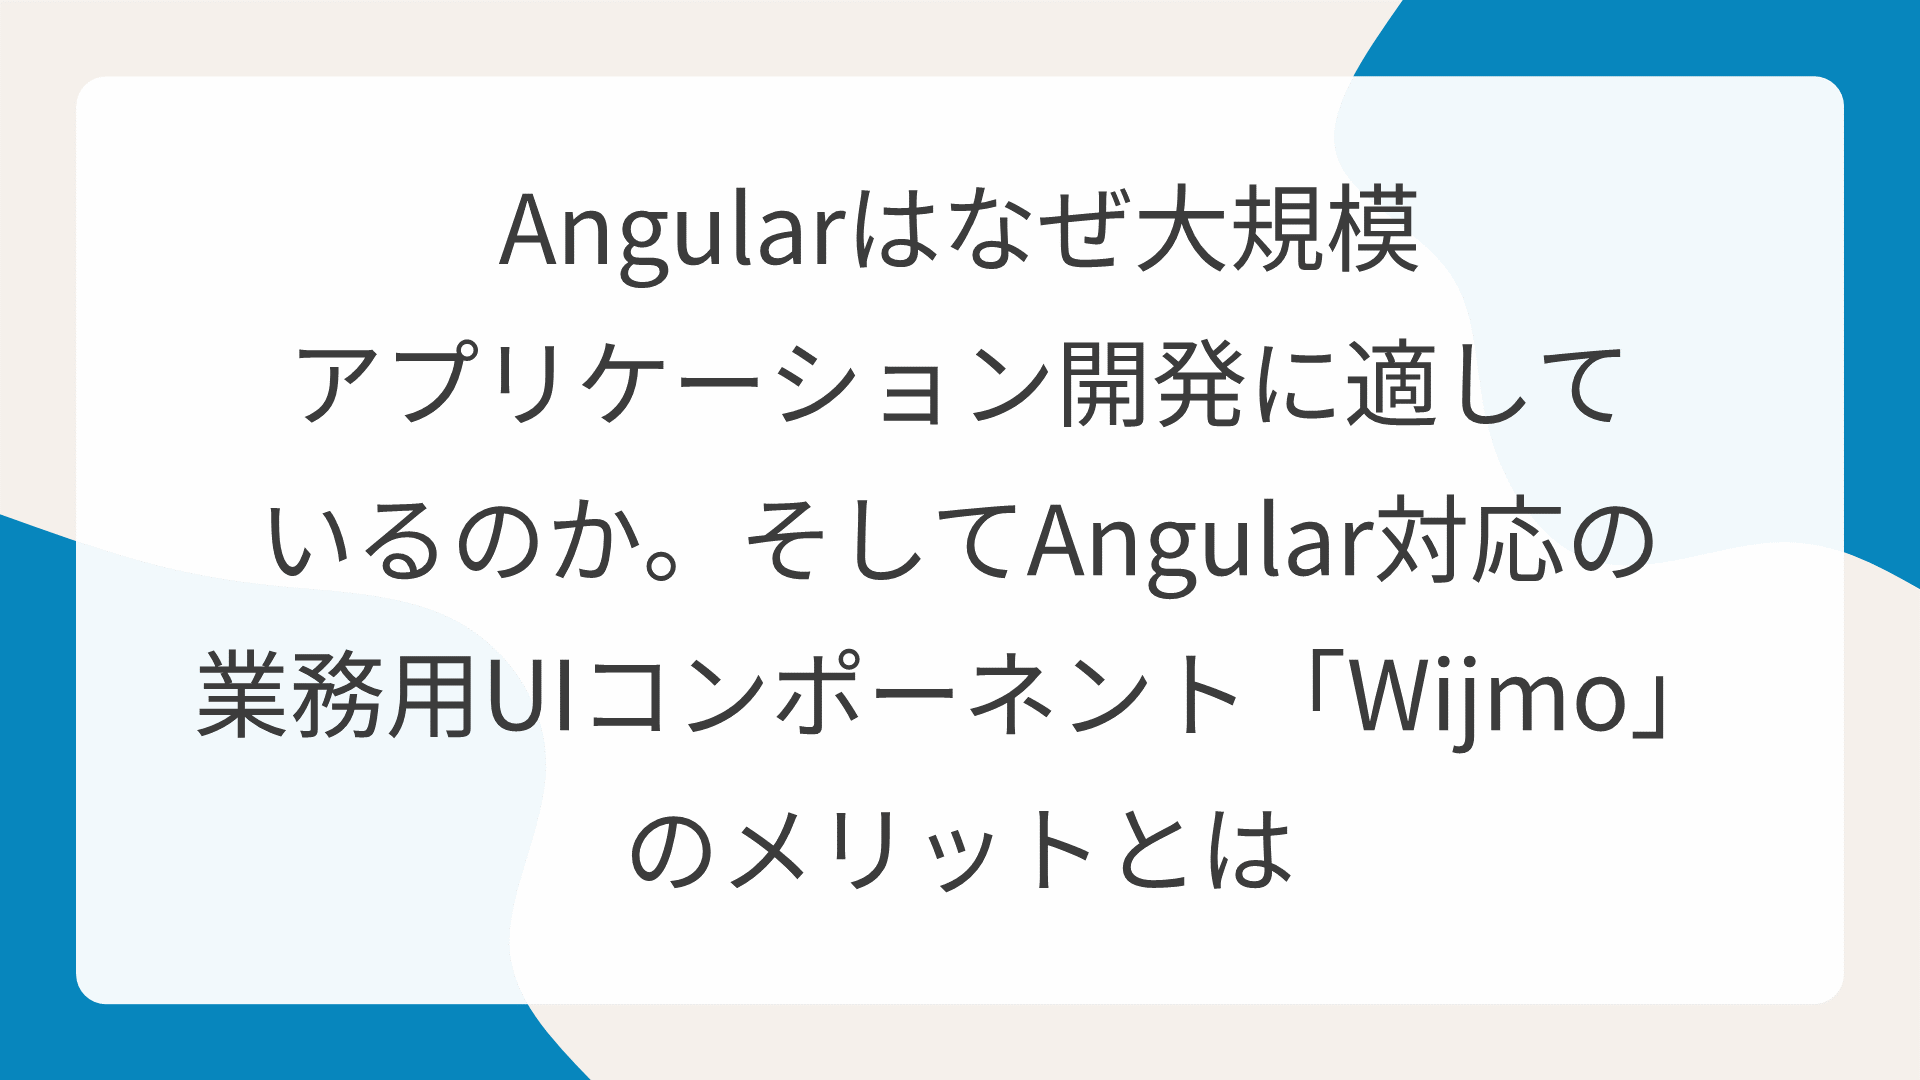 Angularはなぜ大規模アプリケーション開発に適しているのか。そしてAngular対応の業務用UIコンポーネント「Wijmo」のメリットとは